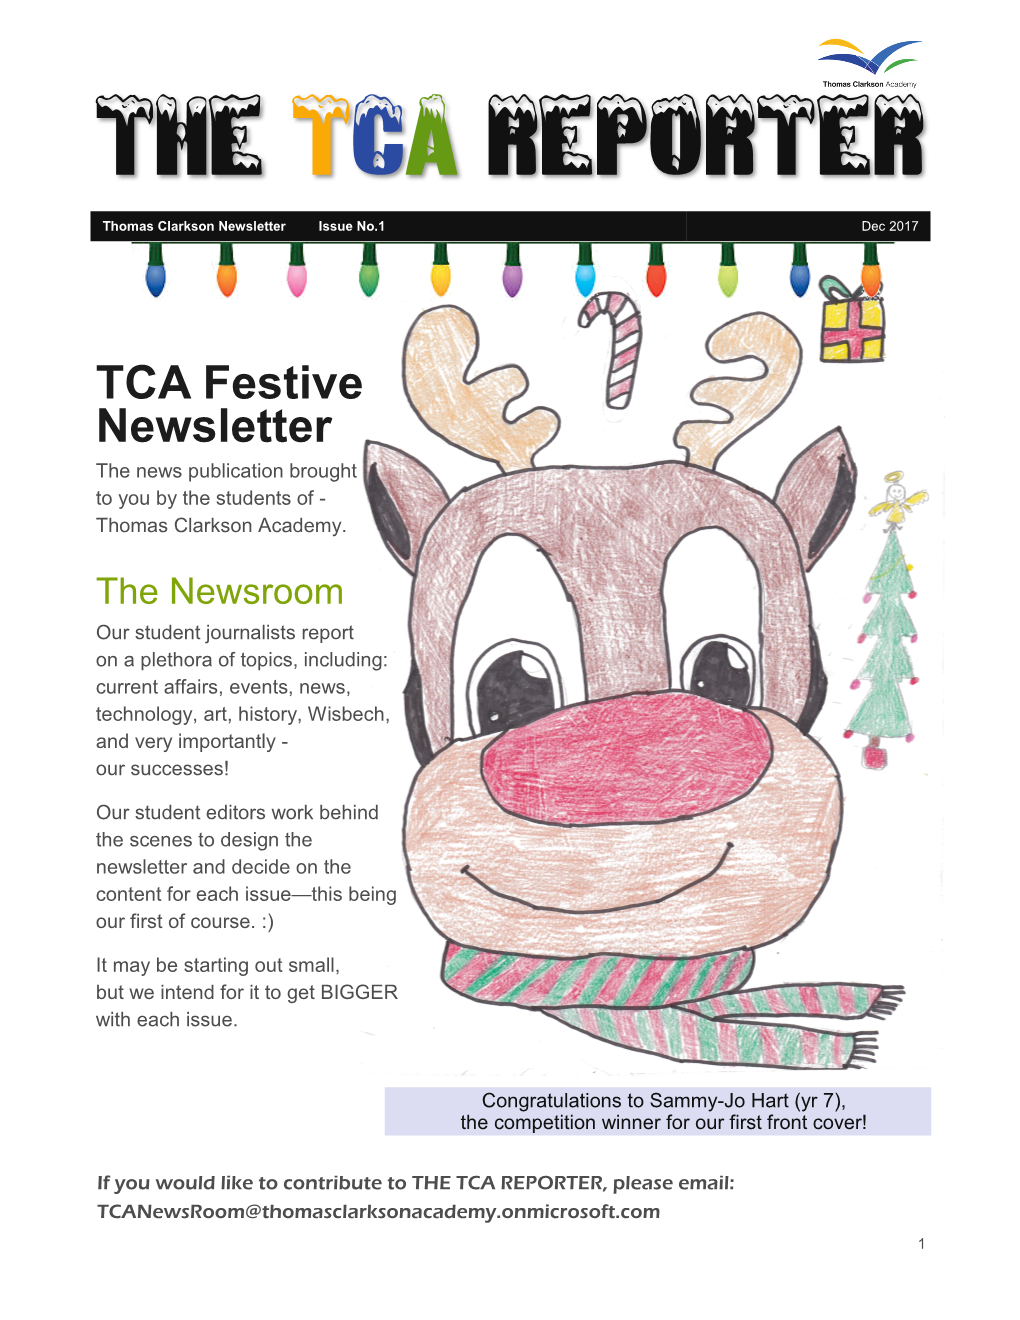 The TCA Reporter